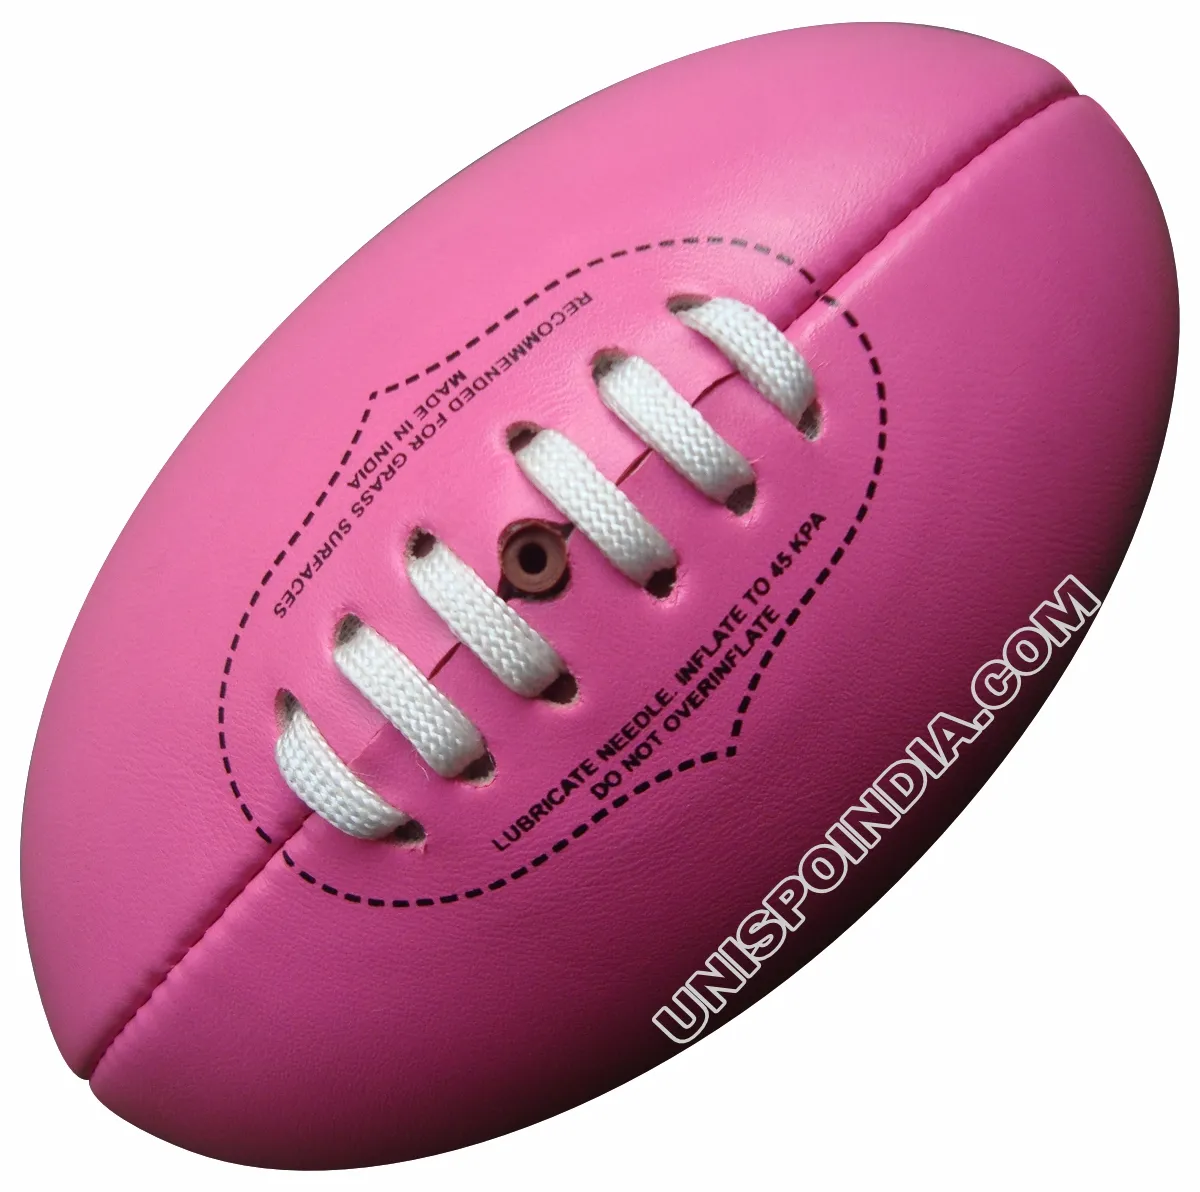 Mini ballons AFL de qualité supérieure, Mini ballons de pied fabriqués par des experts, règles d'aussie, haute durabilité, Football et Football